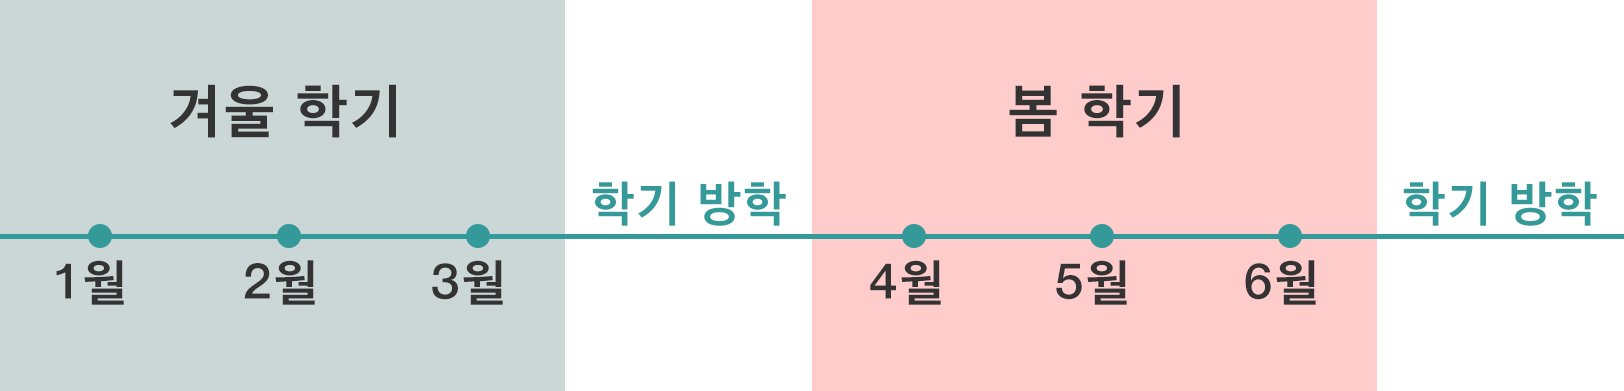 겨울 학기（1〜3월）→학기 방학→봄 학기（4〜6월）→학기 방학